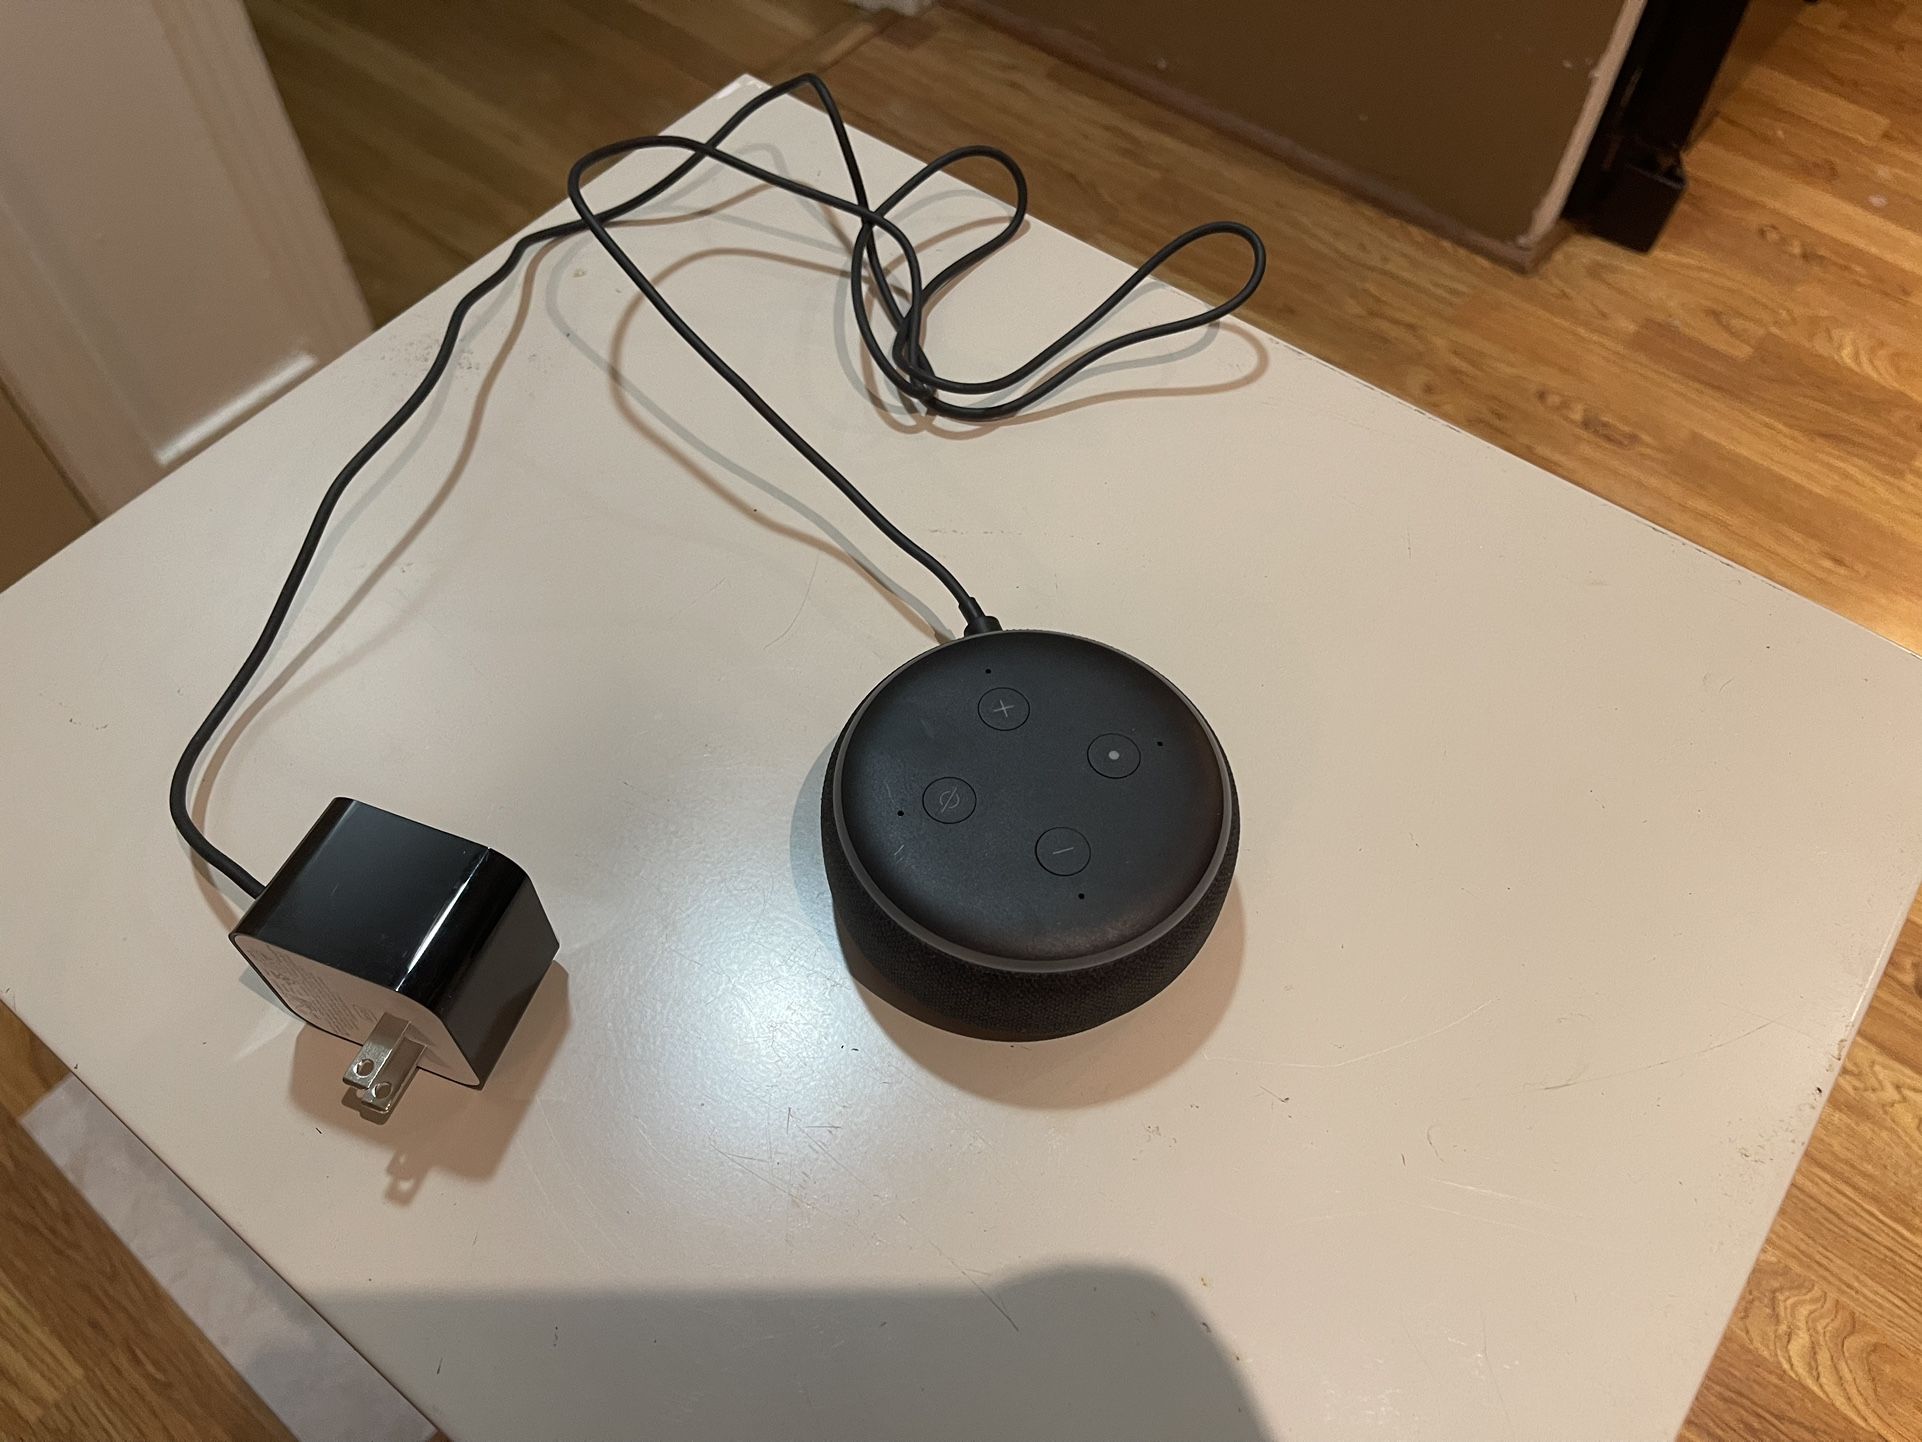 Amazon Alexa Dot Echo Speaker 